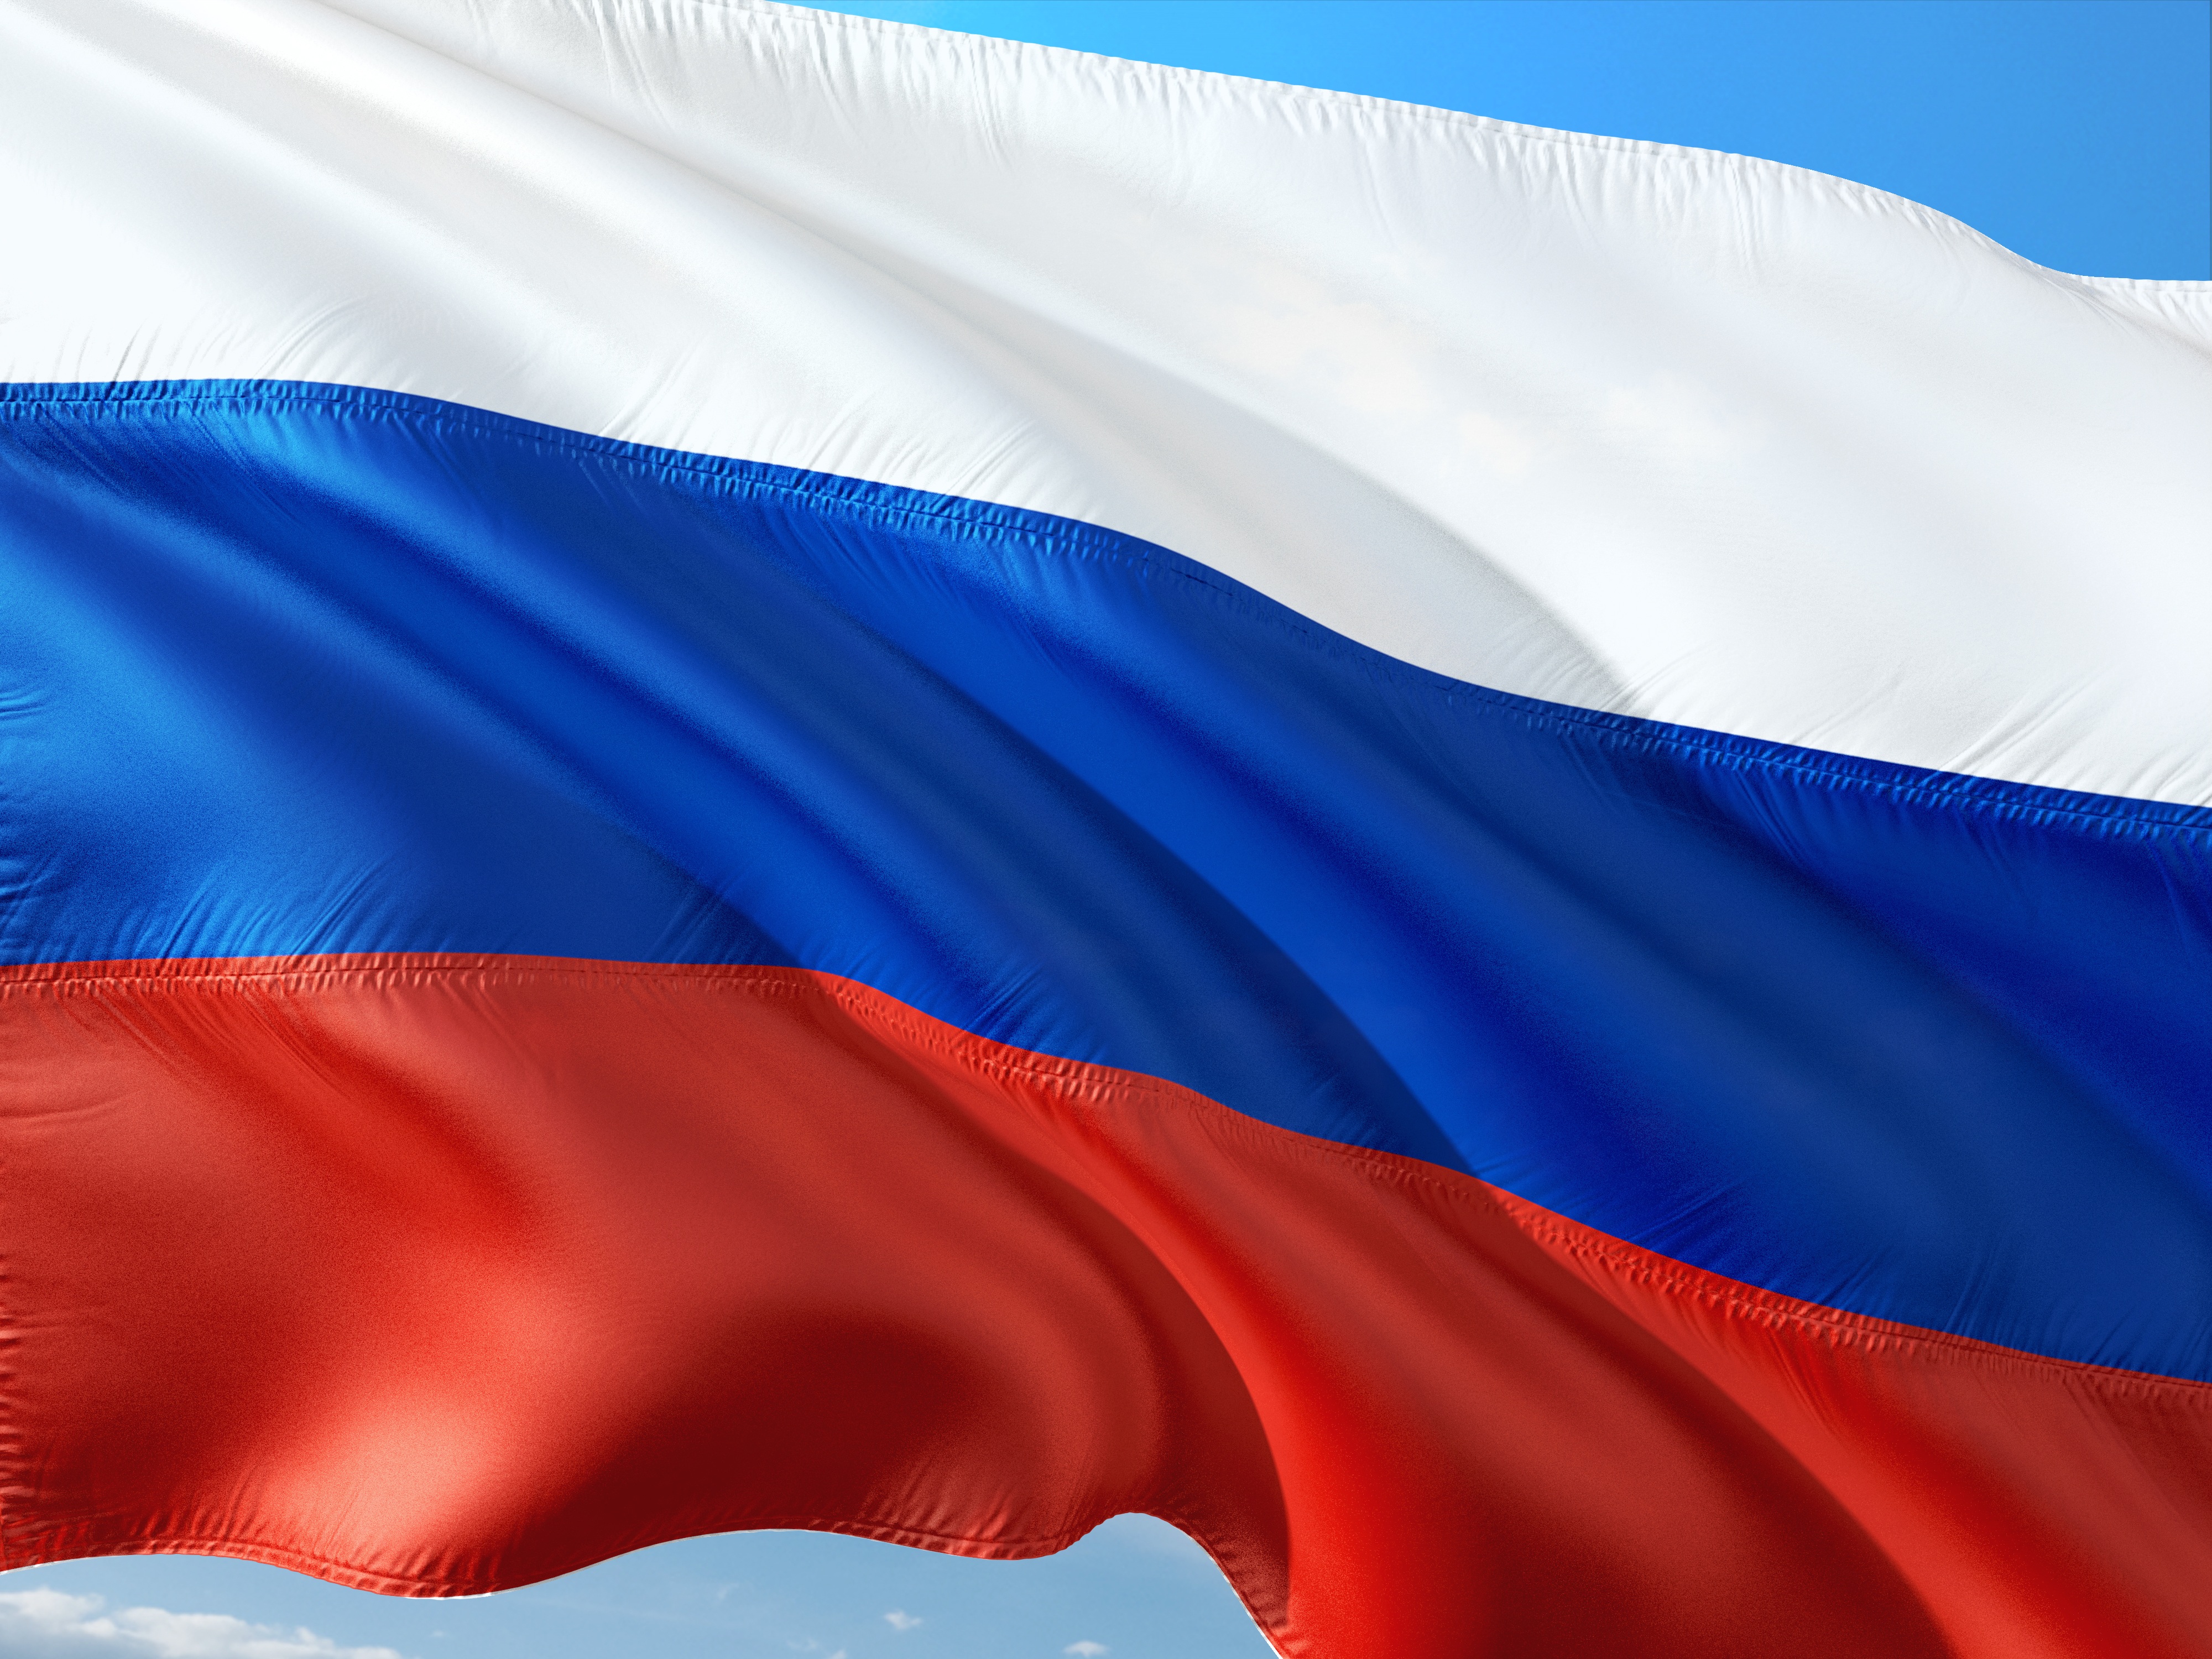 Russia colpita dalle sanzioni: quali opportunità sul mercato?